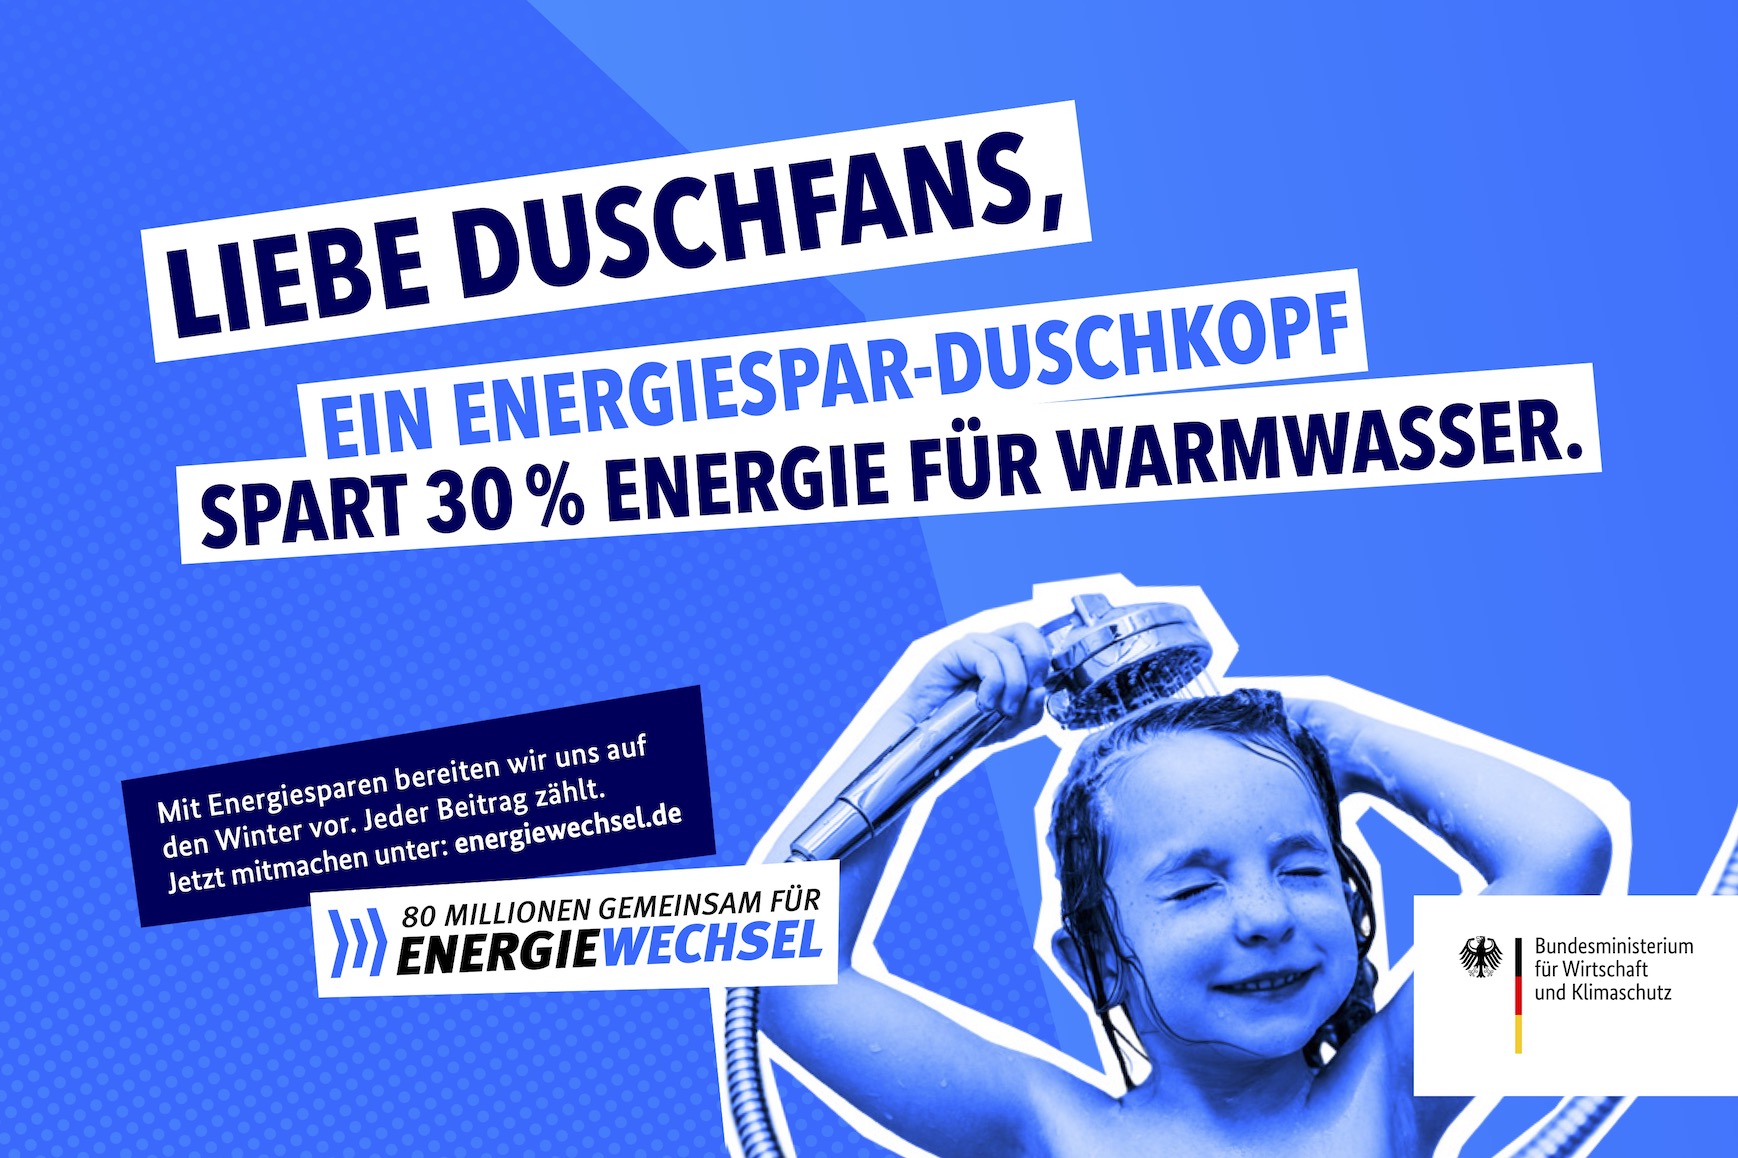 Kampagnenmotiv „Liebe Duschfans” | 80 Millionen gemeinsam für Energiewechsel